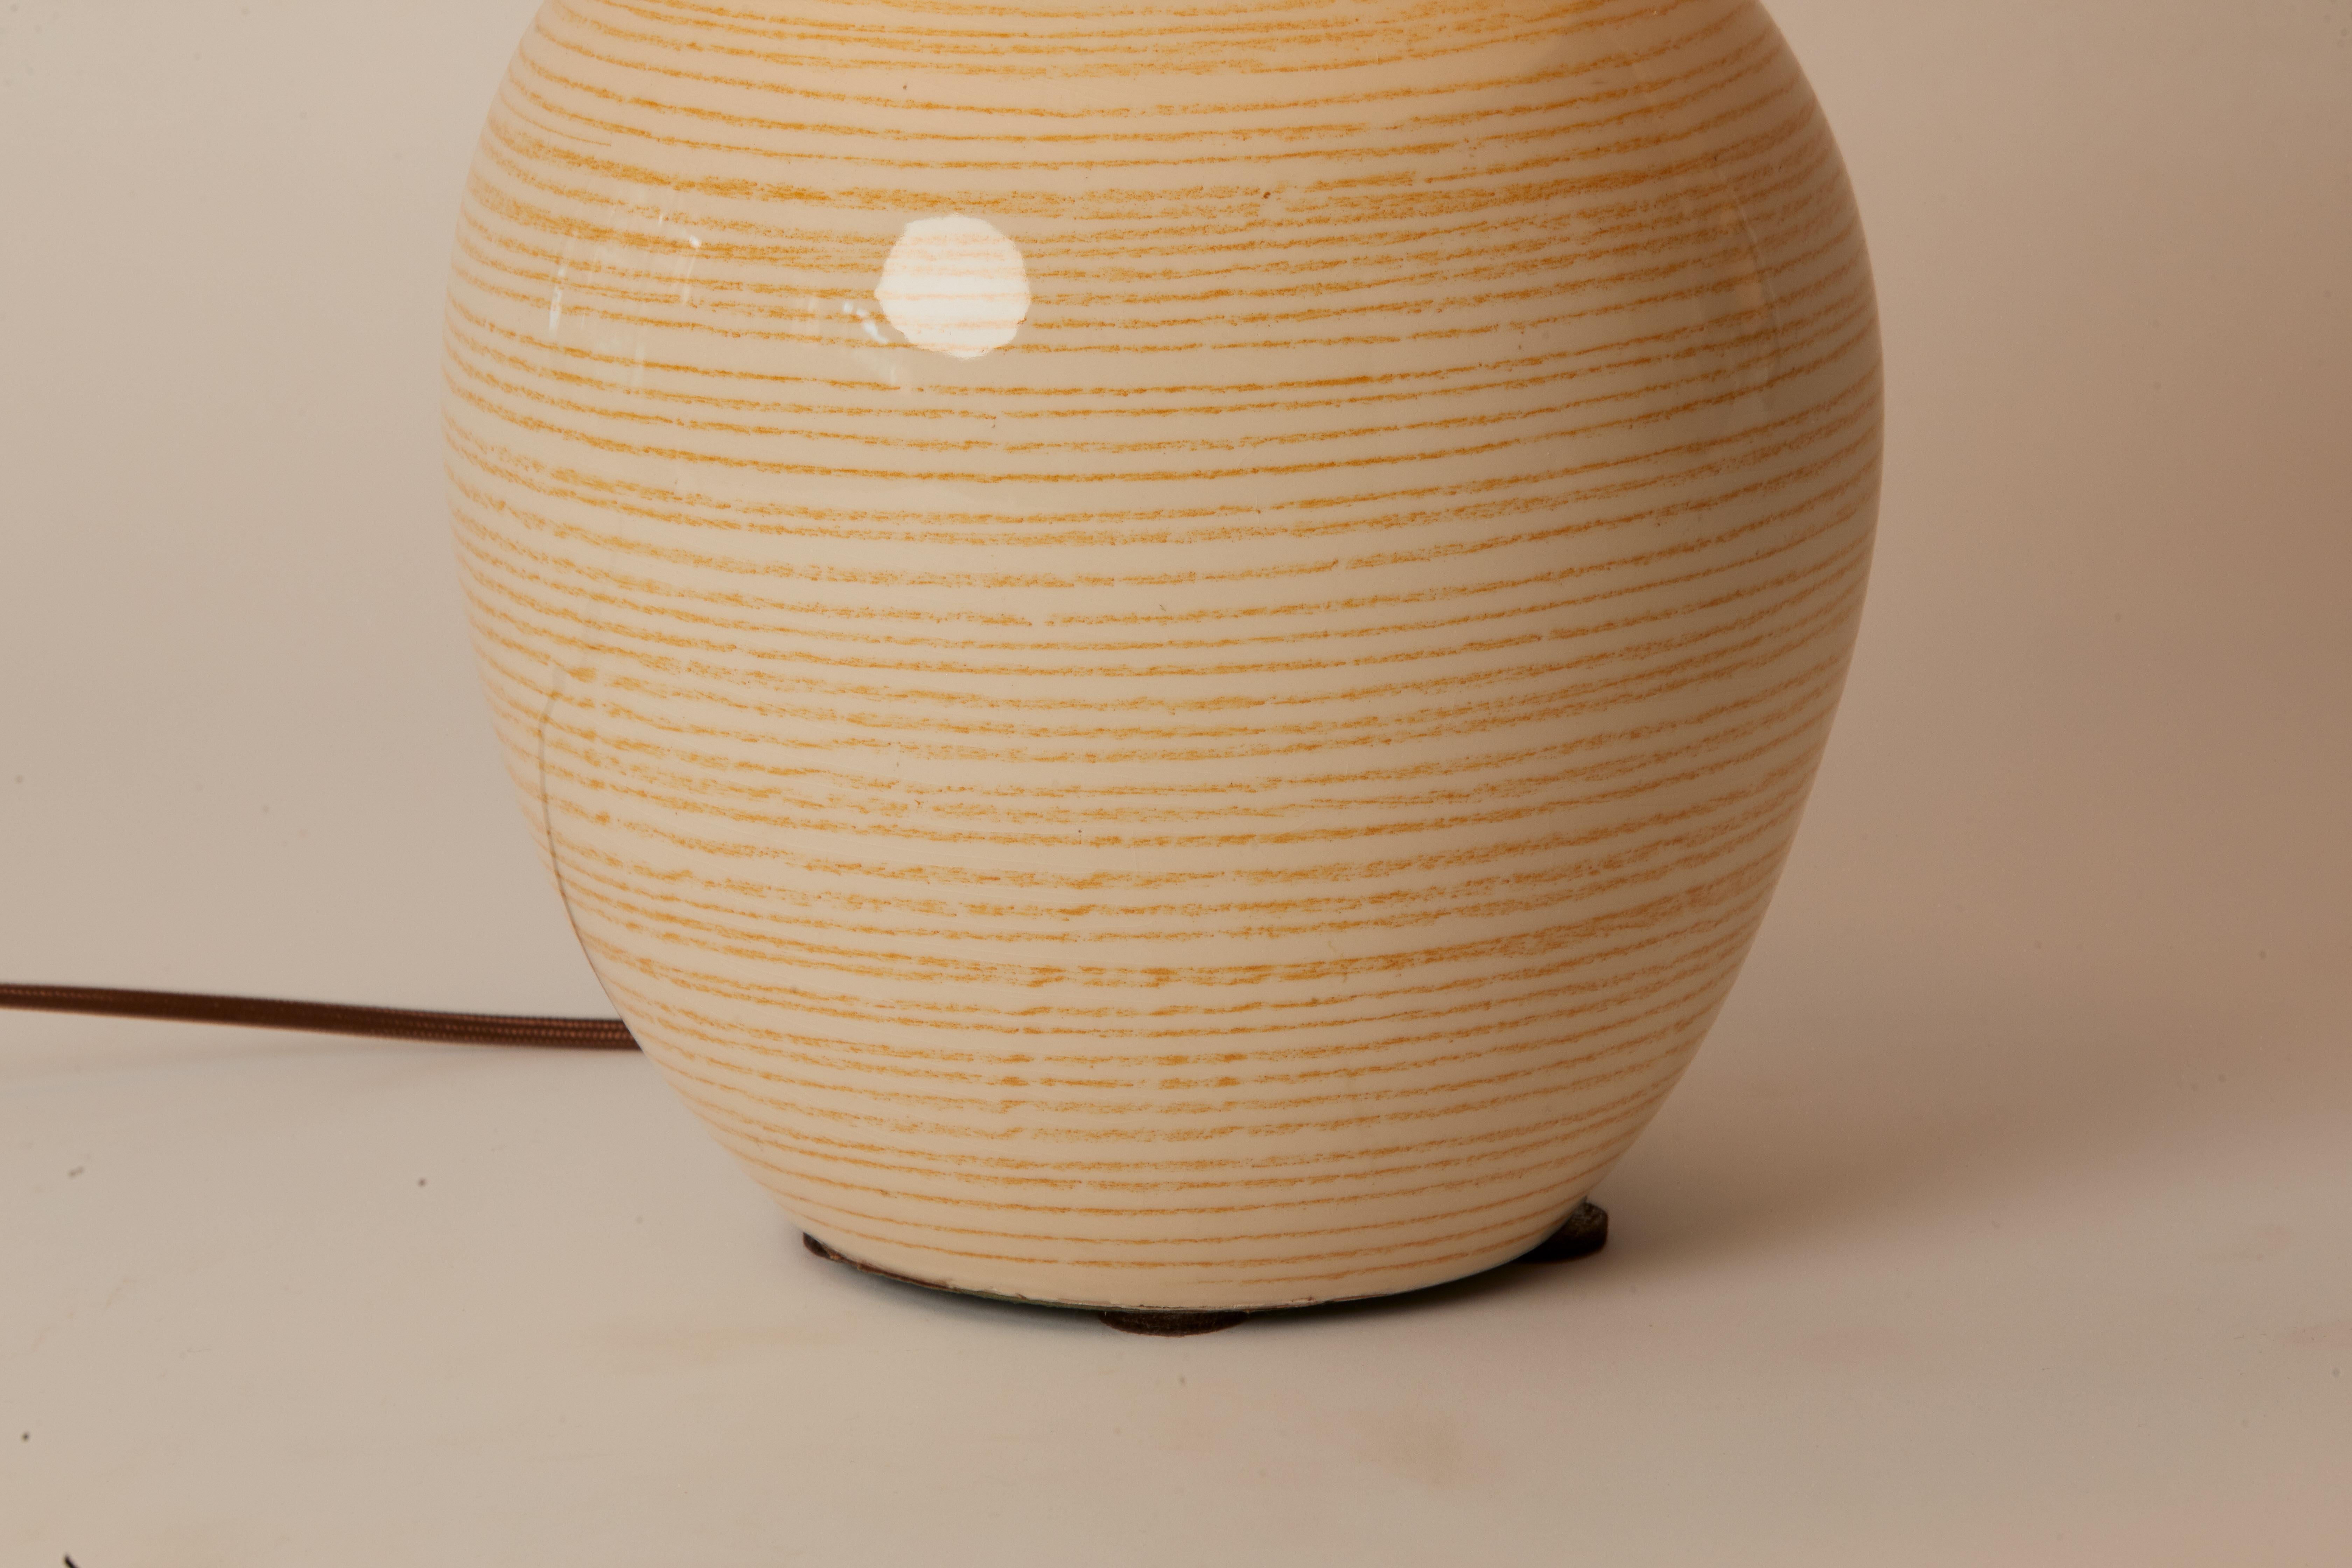 Charmante lampe française des années 1970 en poterie rayée jaune/blanc avec abat-jour personnalisé. Cette lampe a été recâblée